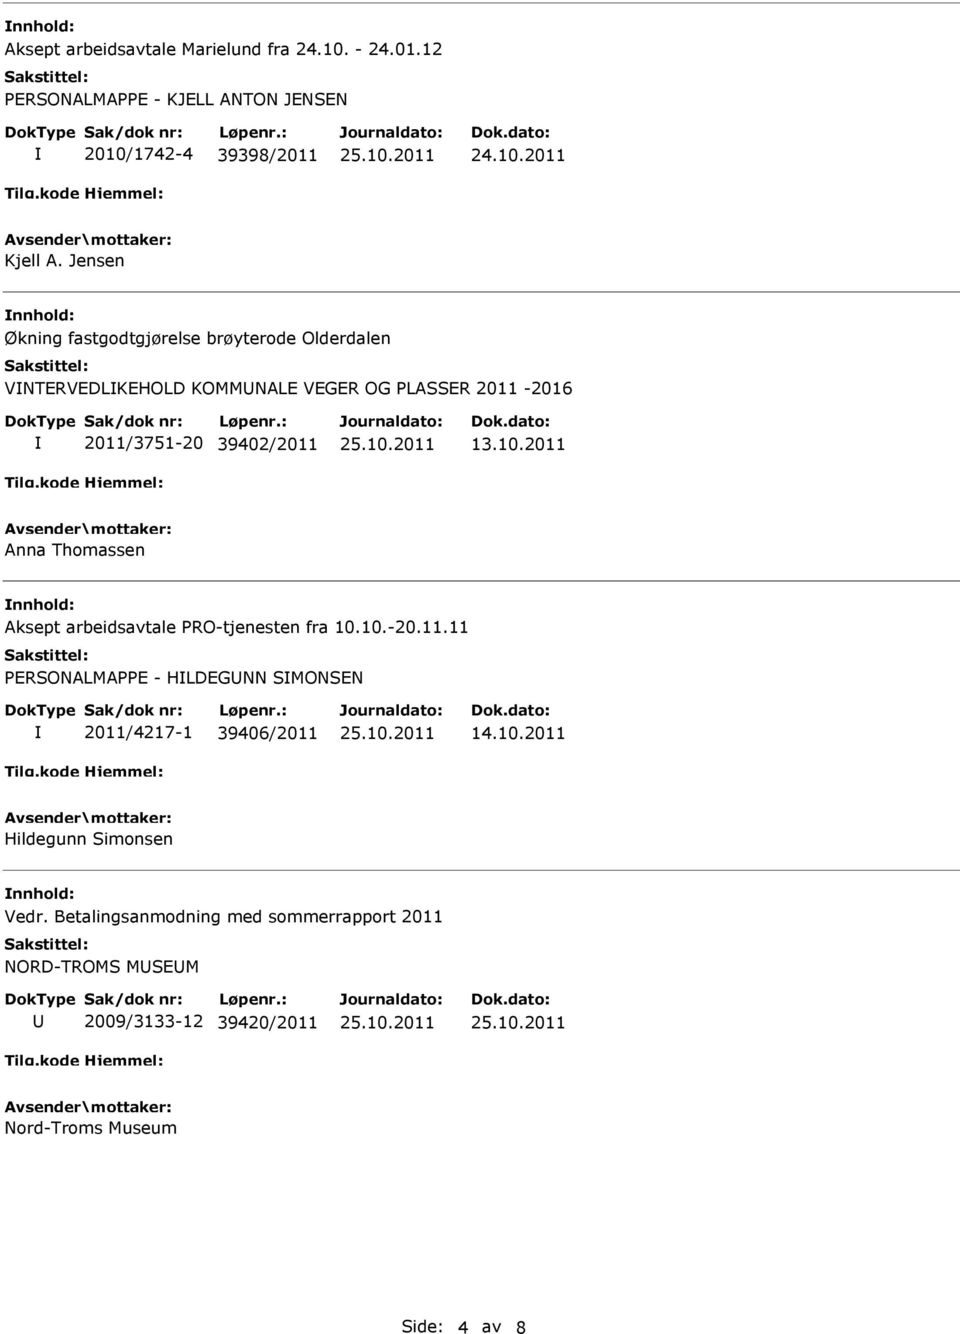 2011 Anna Thomassen Aksept arbeidsavtale PRO-tjenesten fra 10.10.-20.11.11 PERSONALMAPPE - HLDEGNN SMONSEN 2011/4217-1 39406/2011 14.10.2011 Hildegunn Simonsen Vedr.